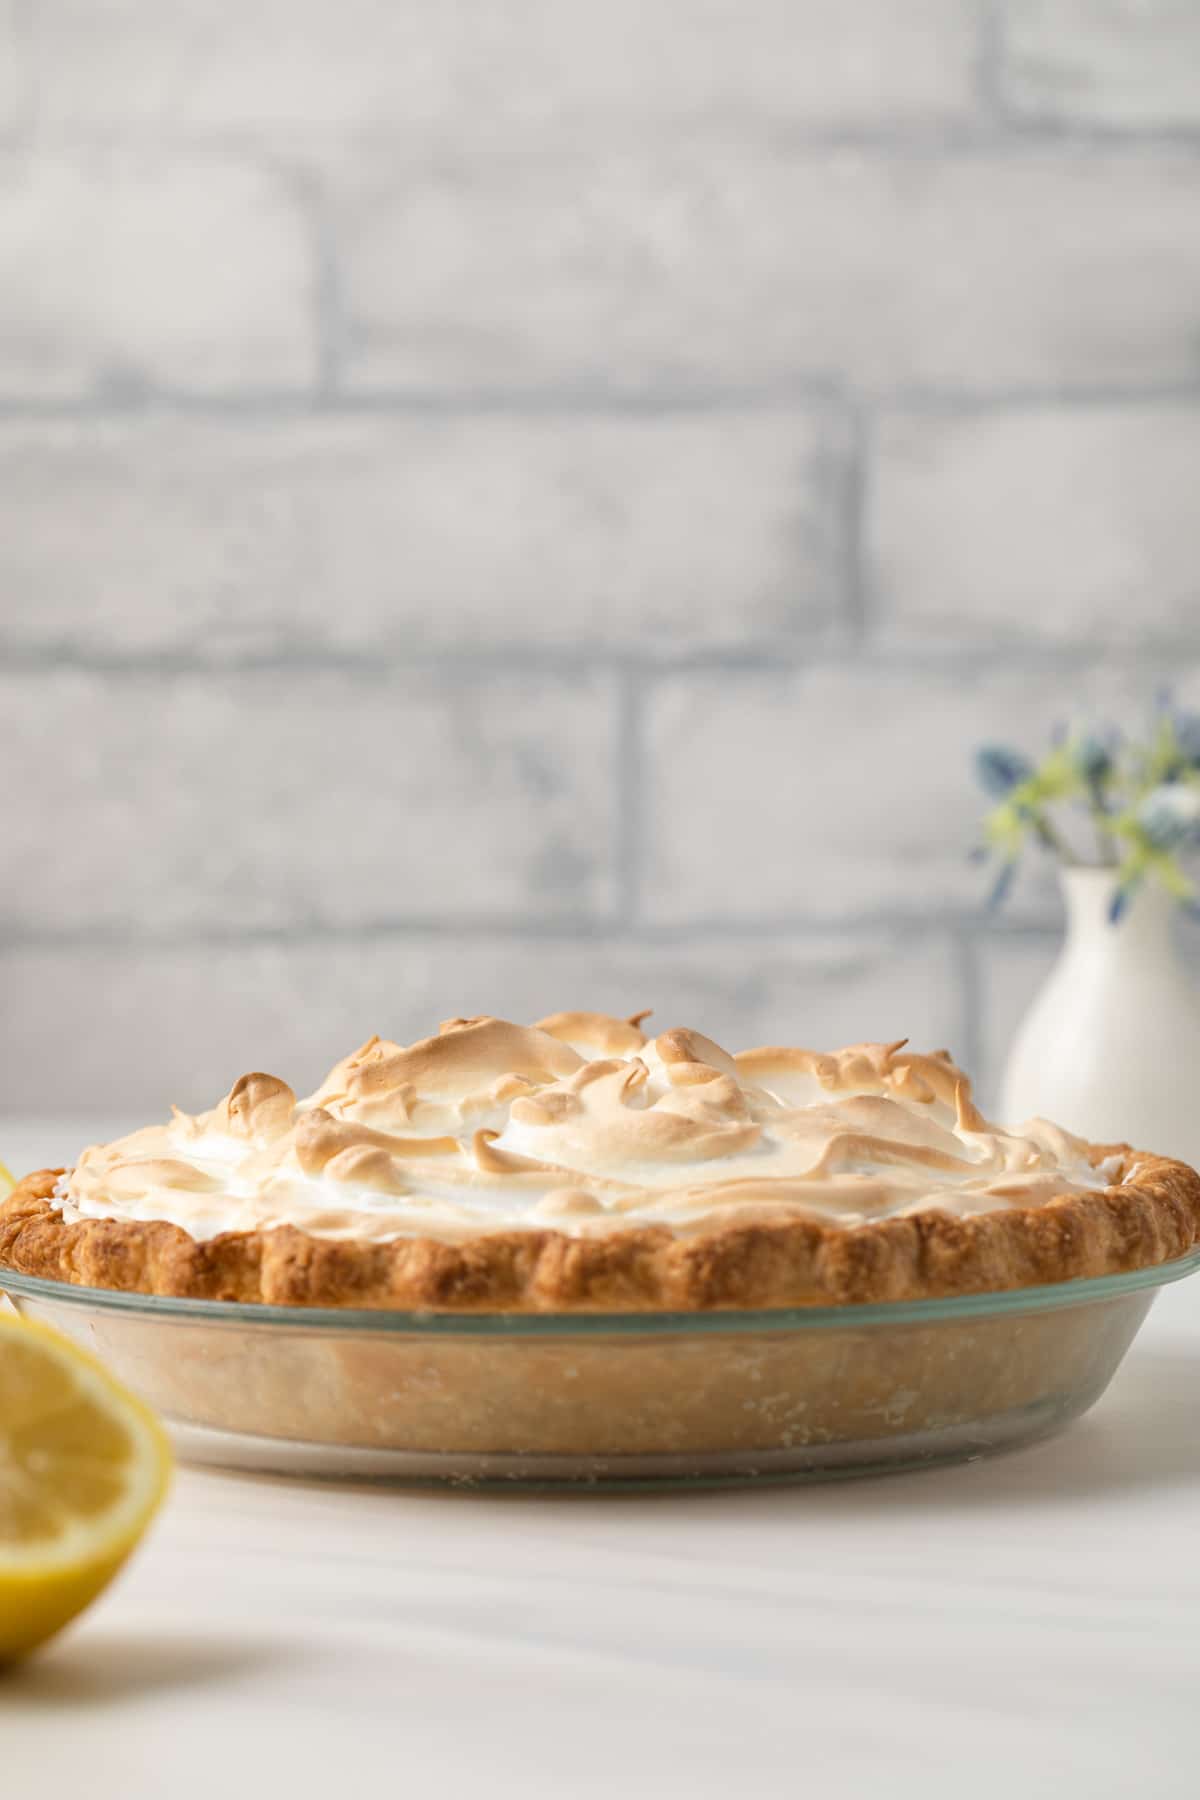 Side view of lemon meringue pie.